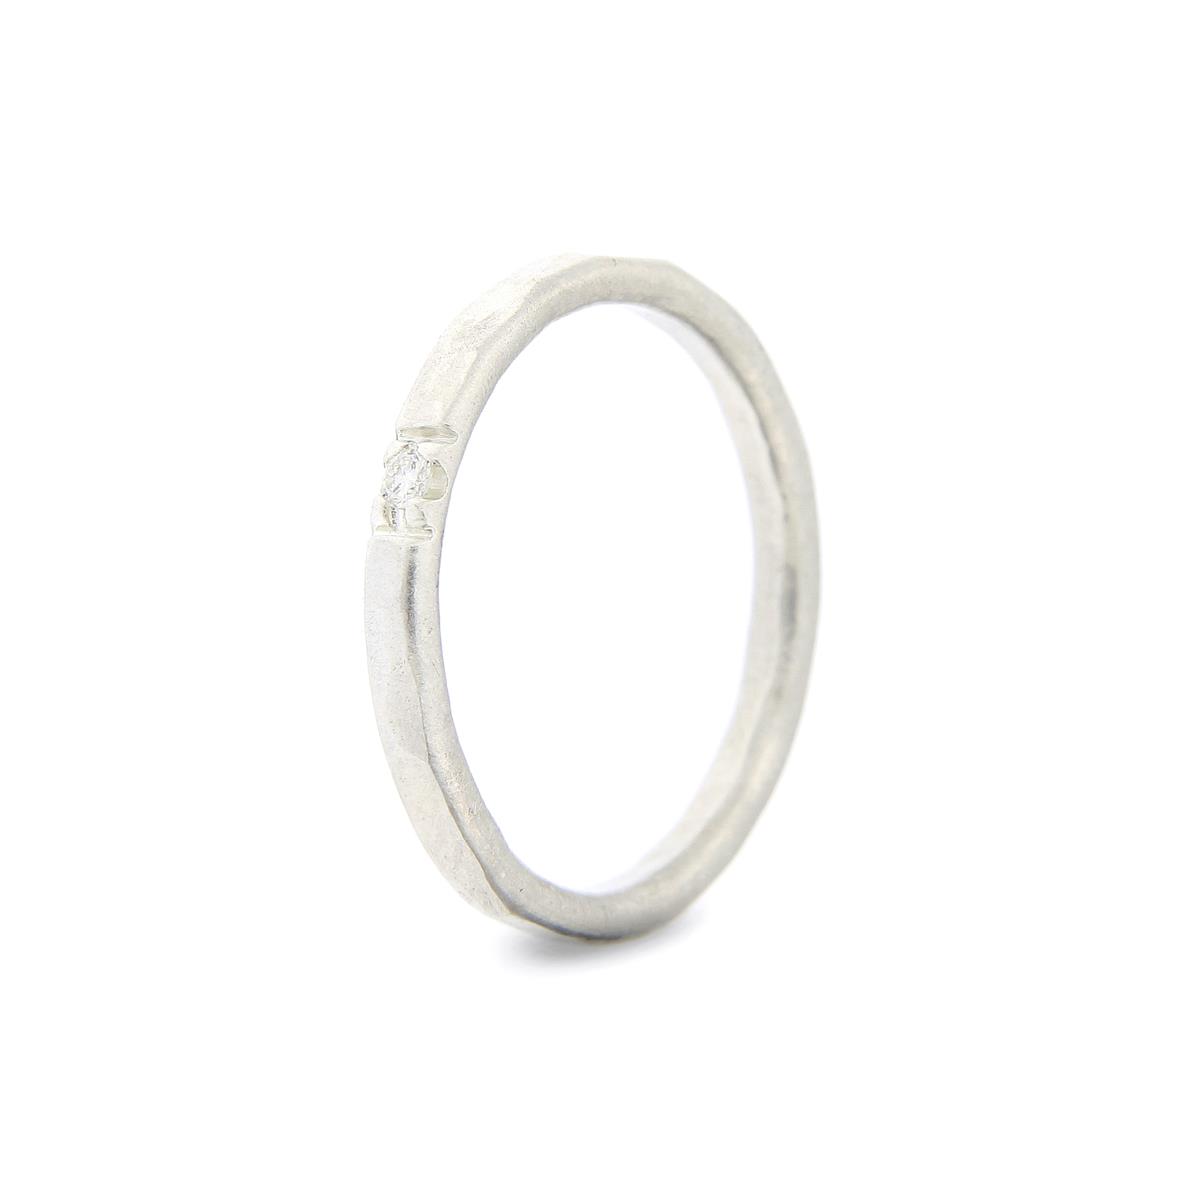 Katie g. Jewellery - Hammered Ring 2,0mm - sterling silber + 1 brillant - Ring um 80€ und pro Brillant 90€ - mehrere Brillanten auch möglich